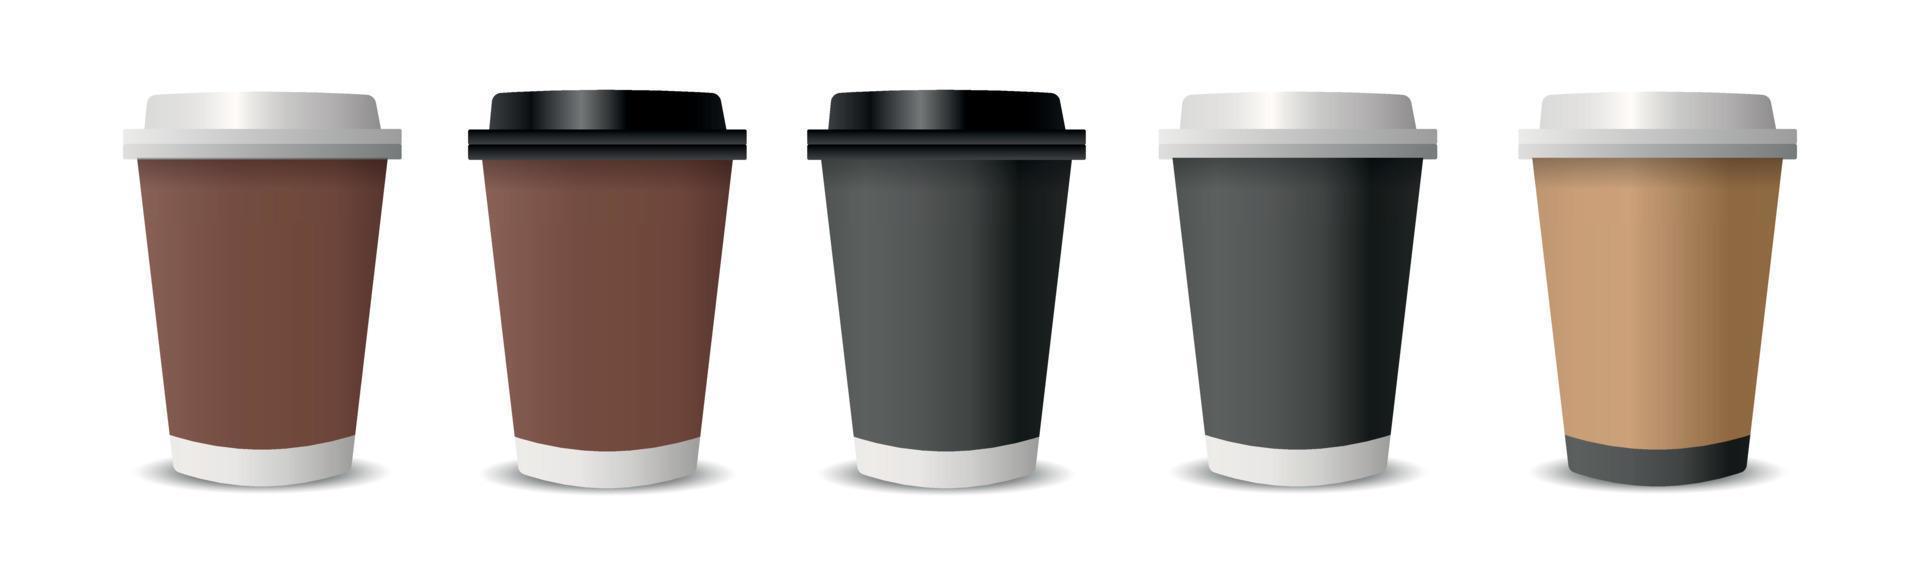 tazze realistiche per caffè e tè su sfondo bianco - vettore